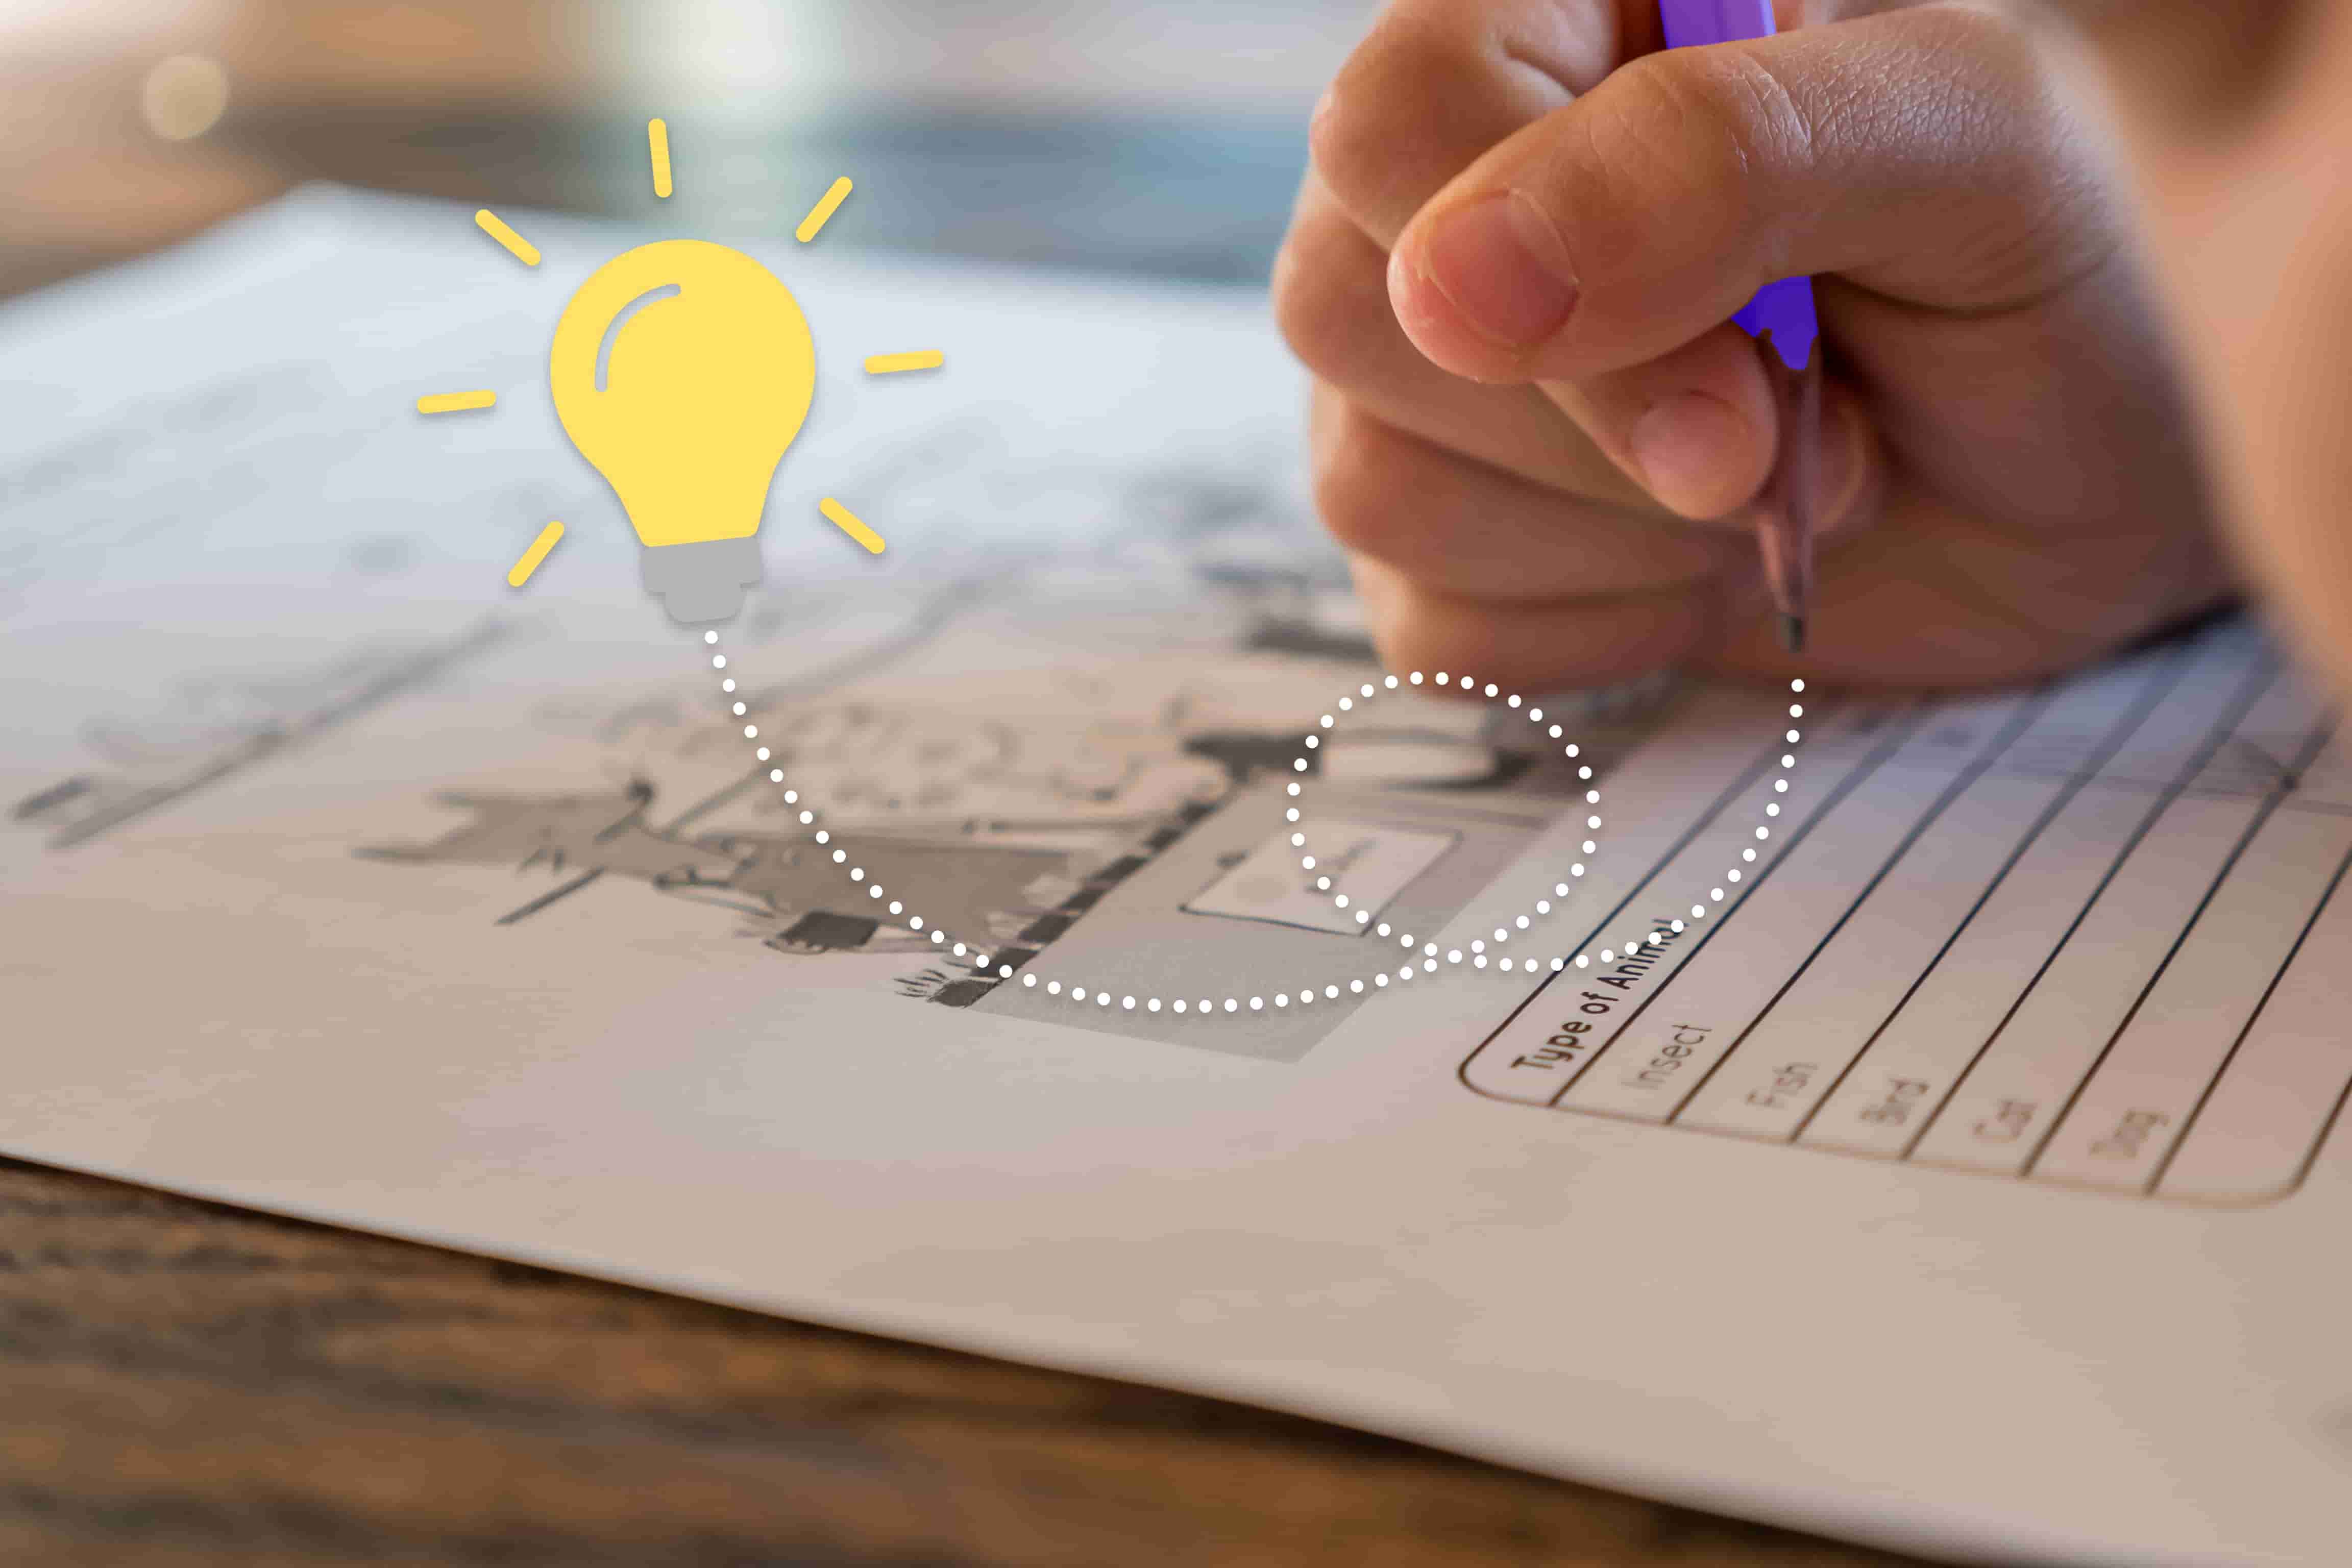 Una mano che tiene una penna scrive su un foglio di carta. Una vignetta raffigurante una lampadina compare a sinistra della mano.